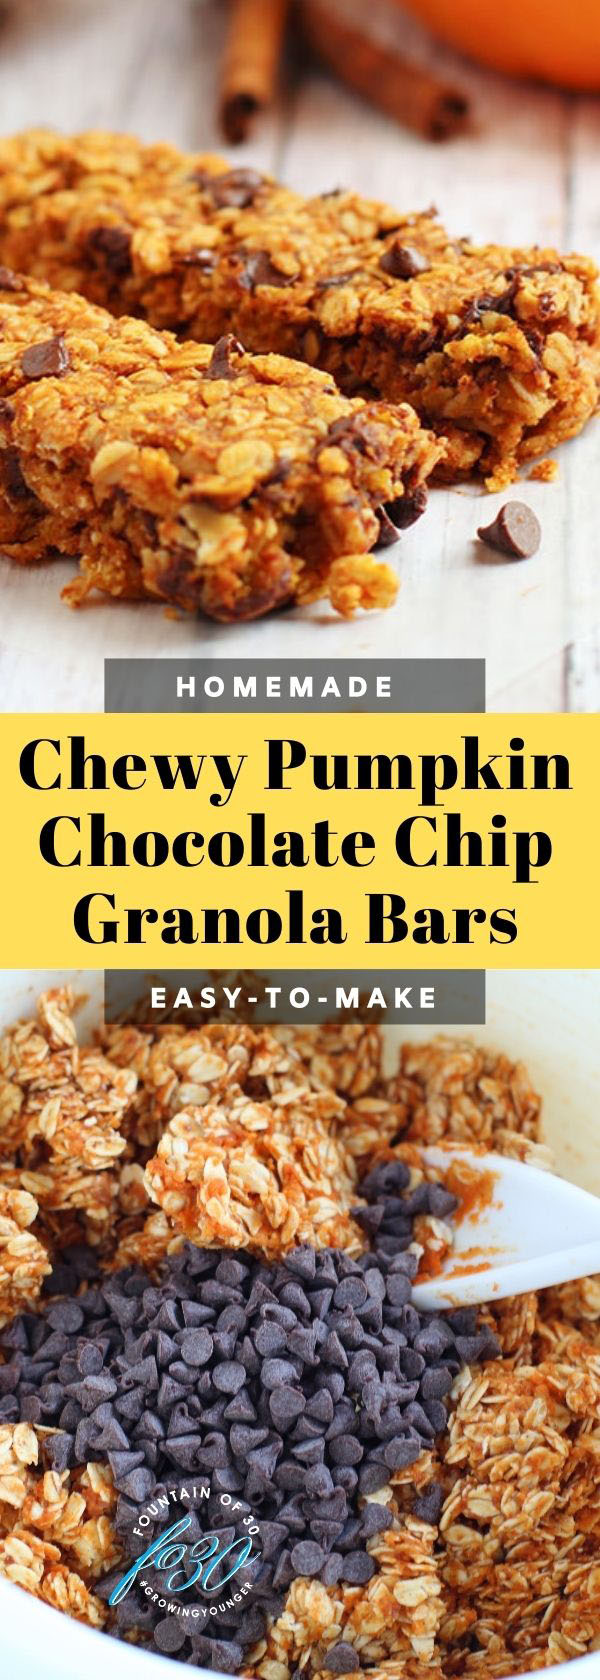 chewy pumpkin chocolate chip granola bars fountainof30